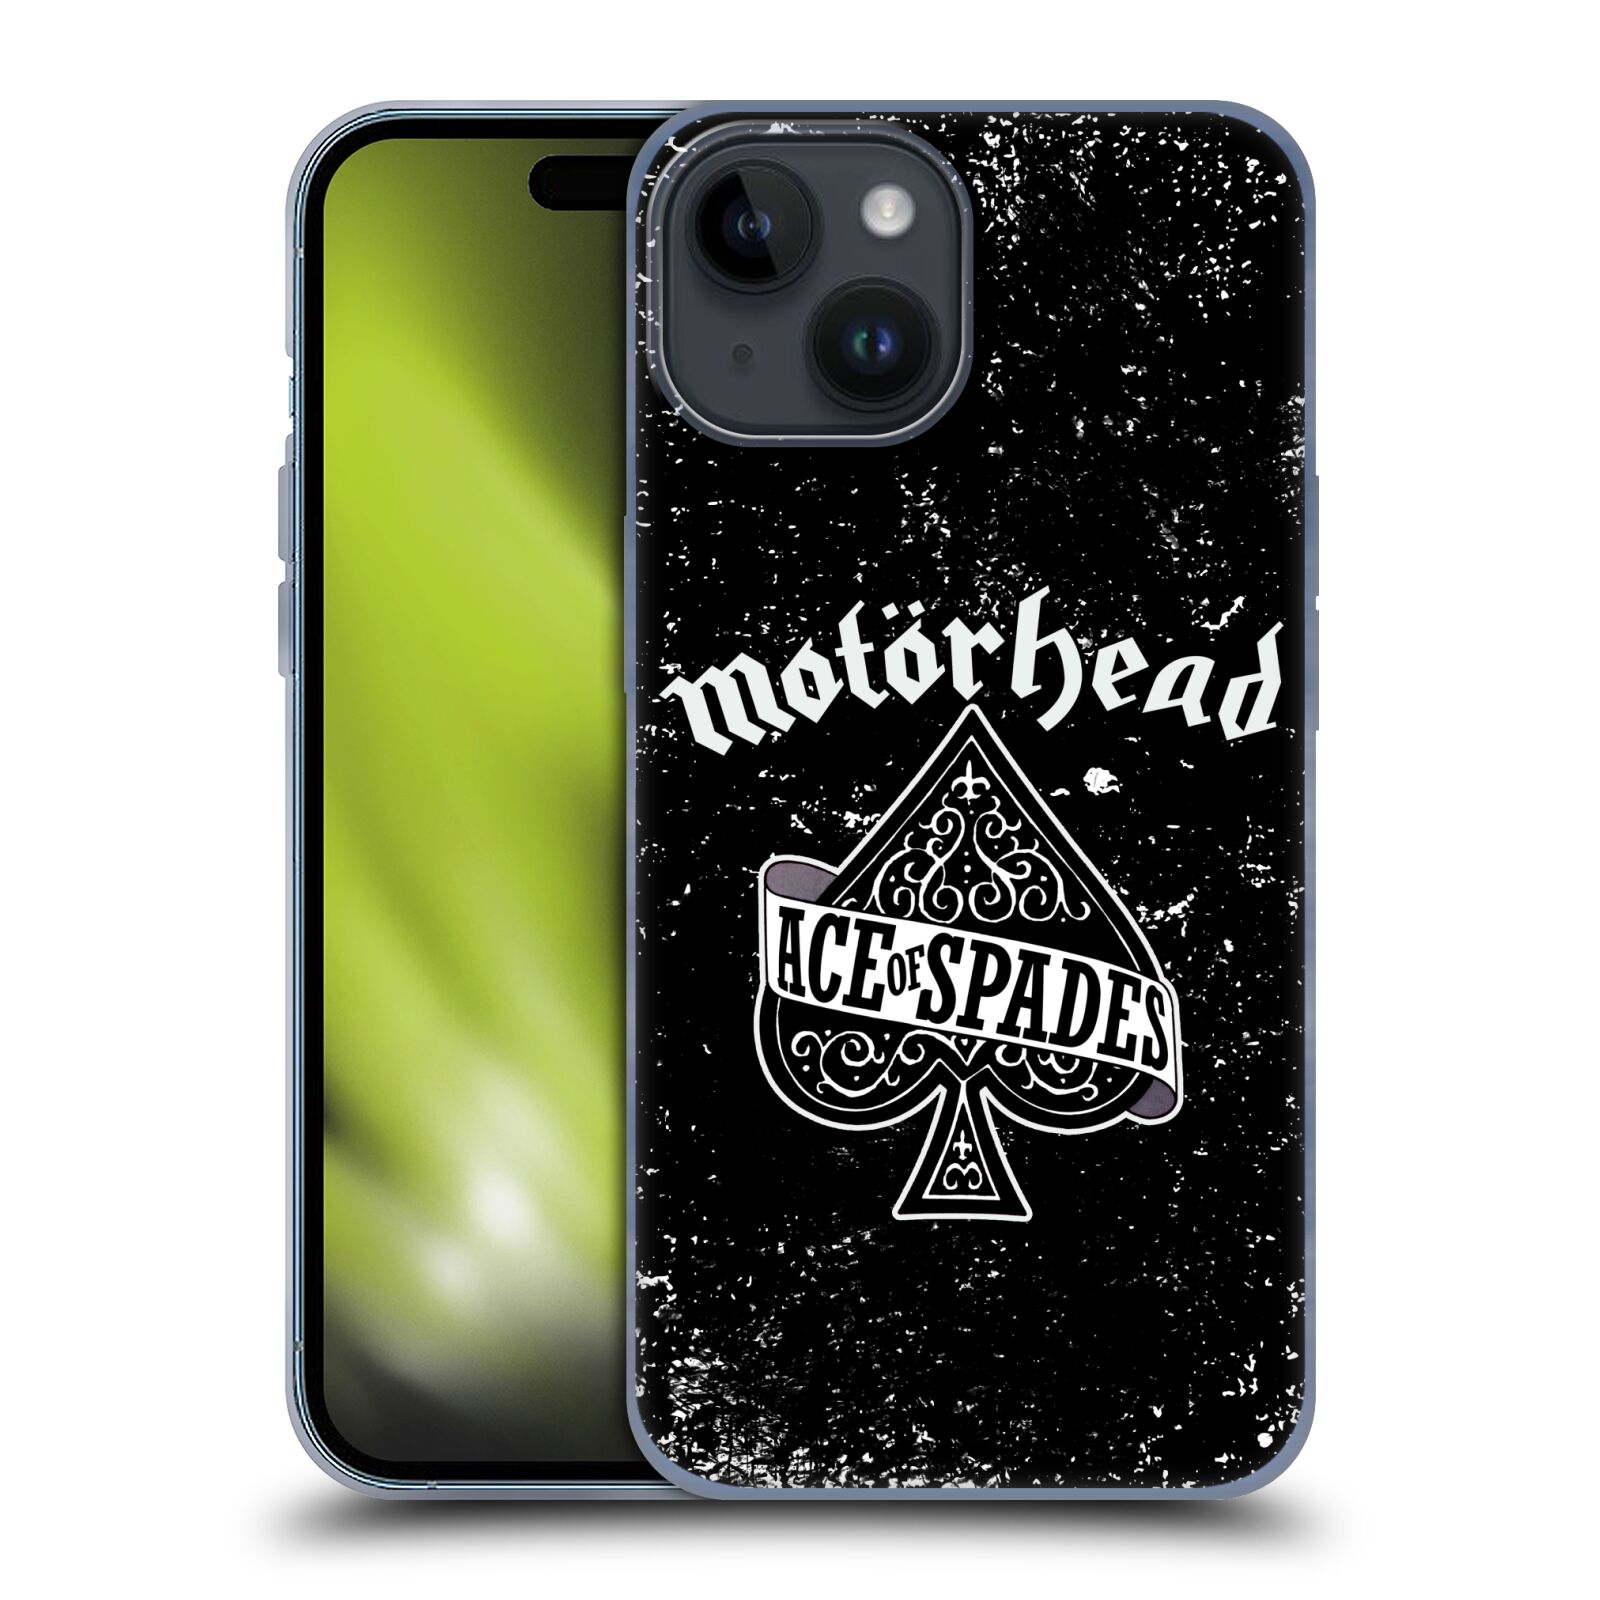 Silikonové lesklé pouzdro na mobil Apple iPhone 15 - Motörhead - Ace Of Spades (Silikonový lesklý kryt, obal, pouzdro na mobilní telefon Apple iPhone 15 s licencovaným motivem Motörhead - Ace Of Spades)